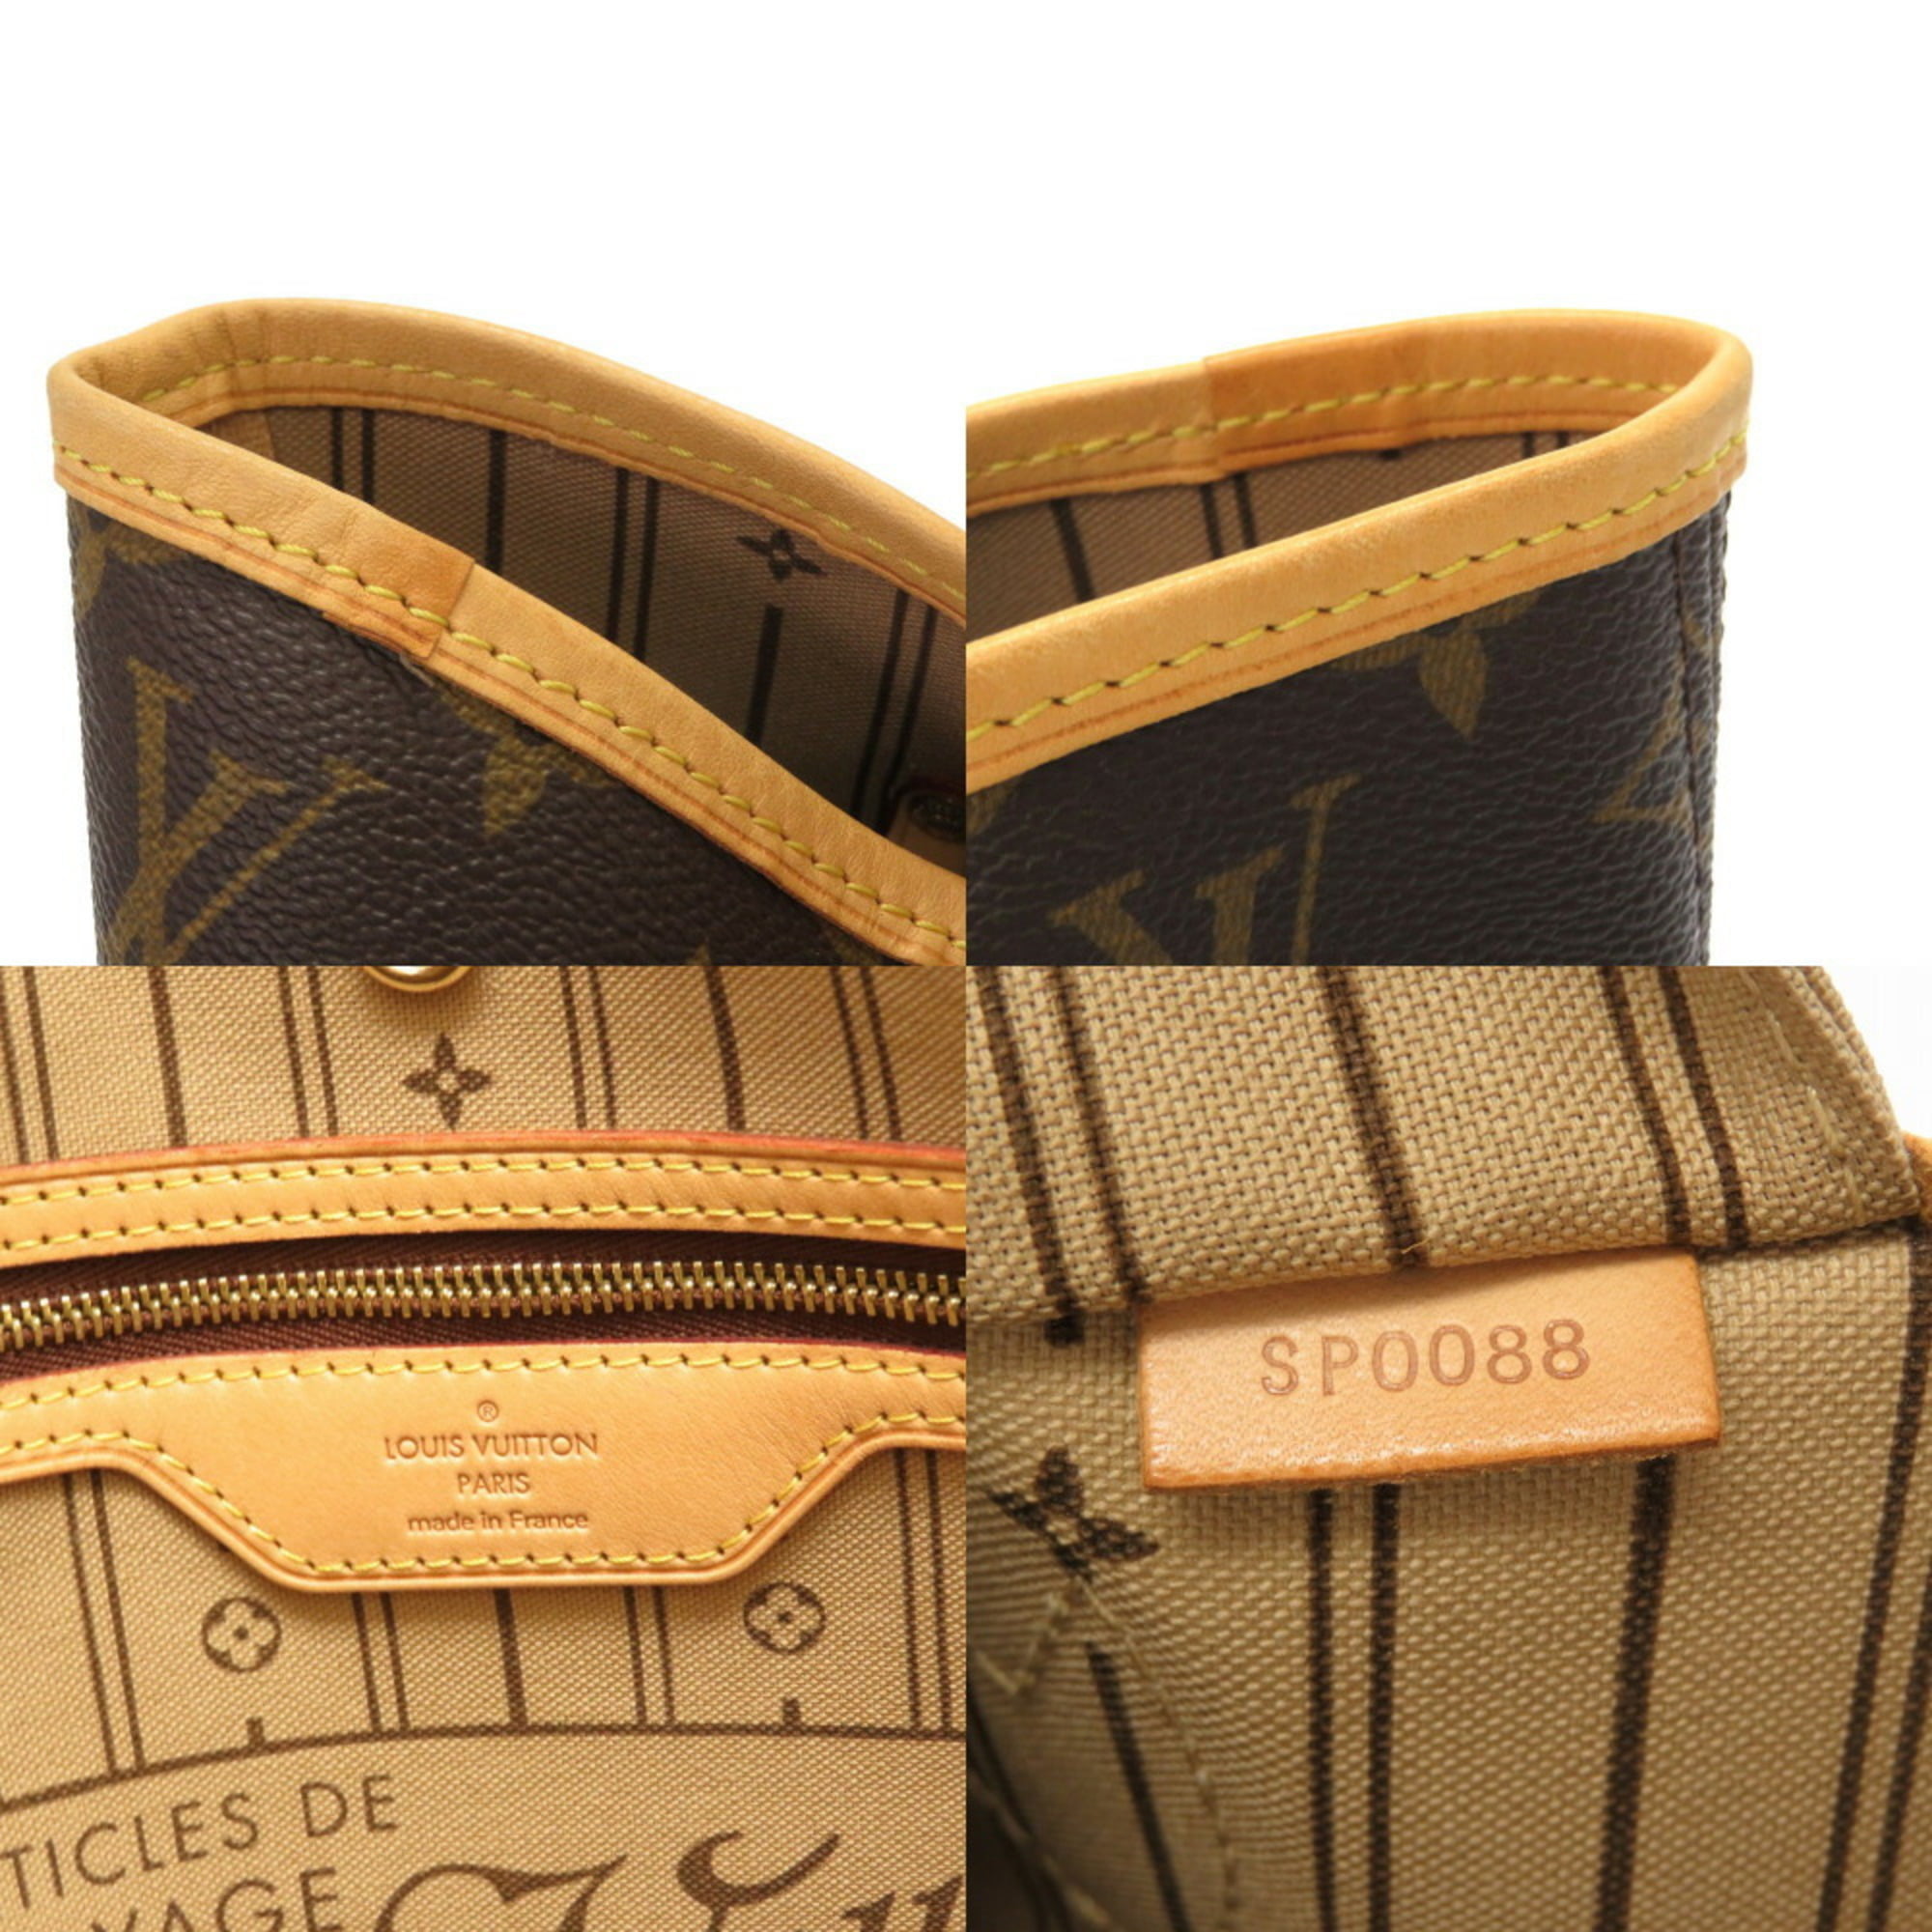 used Pre-owned Louis Vuitton Monogram Neverfull mm M40156 Tote Bag LV 0073 Louis Vuitton (Good), Adult Unisex, Size: (HxWxD): 29cm x 31cm x 15cm /